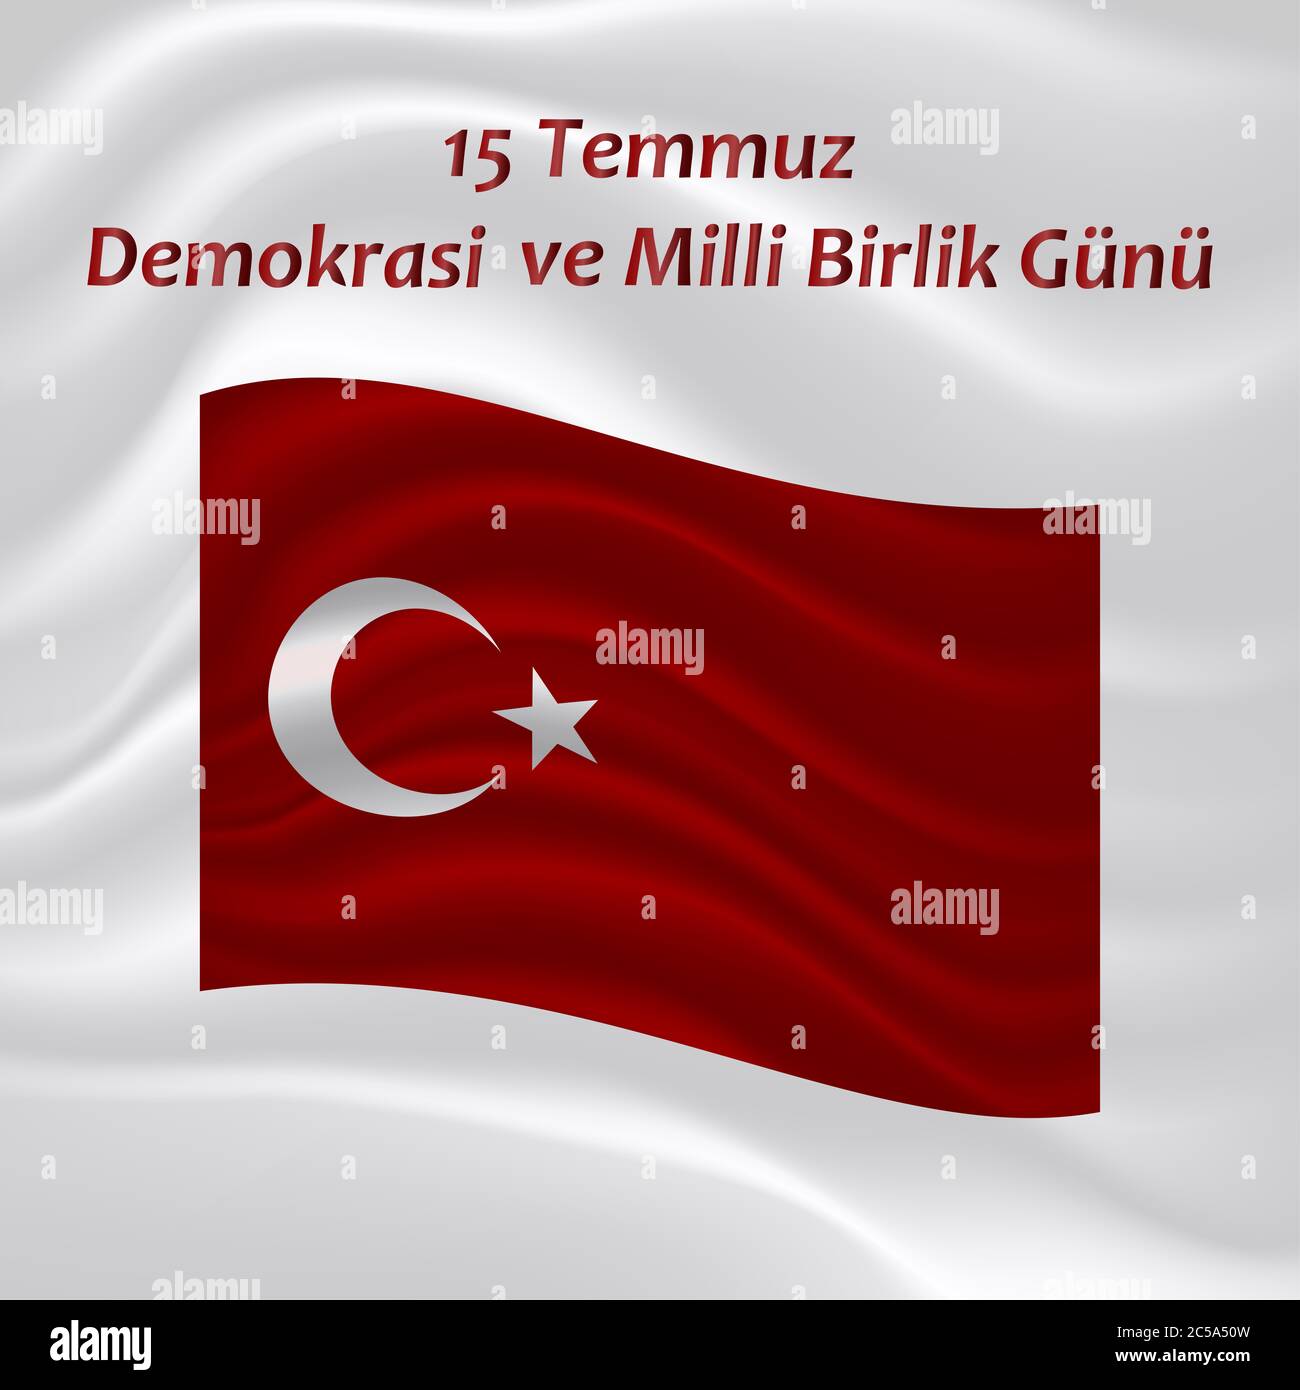 Contesto di congratulazioni con la bandiera nazionale turca con l'iscrizione sul turco - 15 luglio la Giornata della democrazia e dell'unità nazionale. Foto Stock